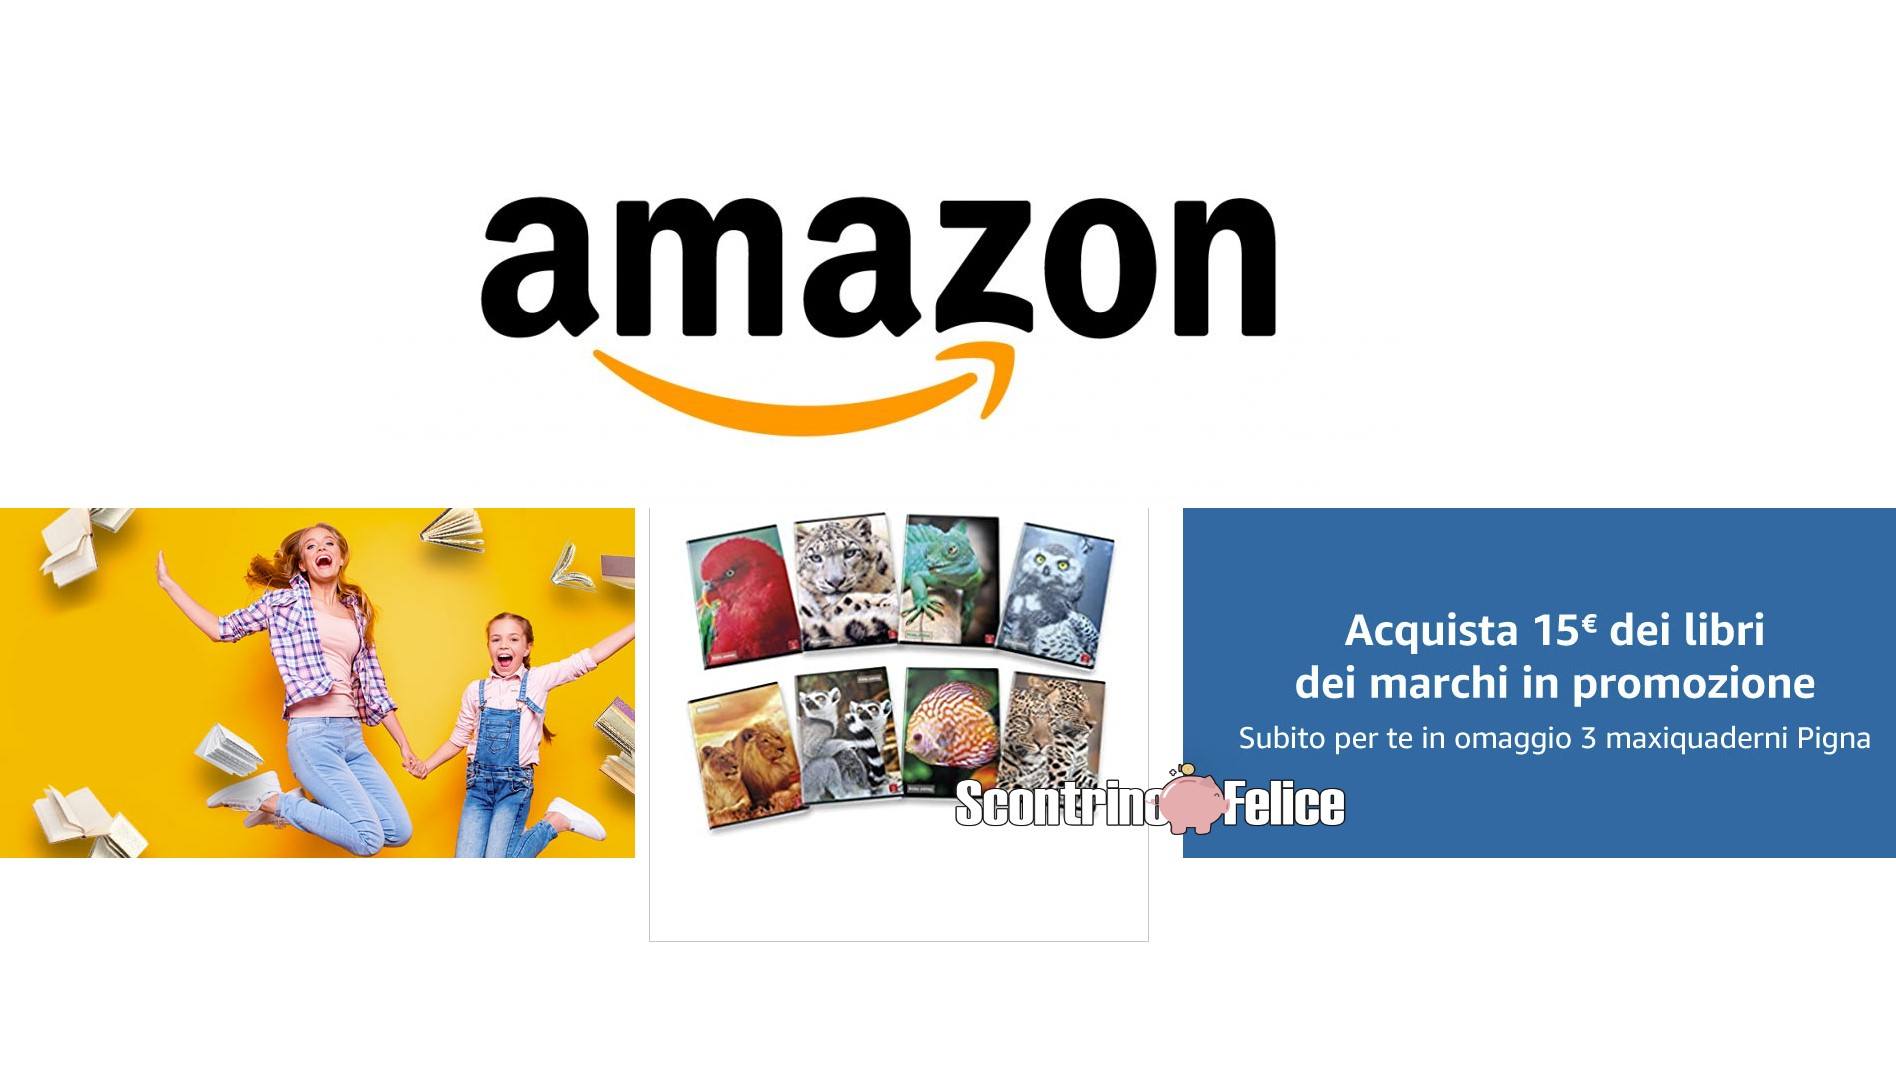 Amazon Per fare la differenza Maxi quaderni Pigna omaggio